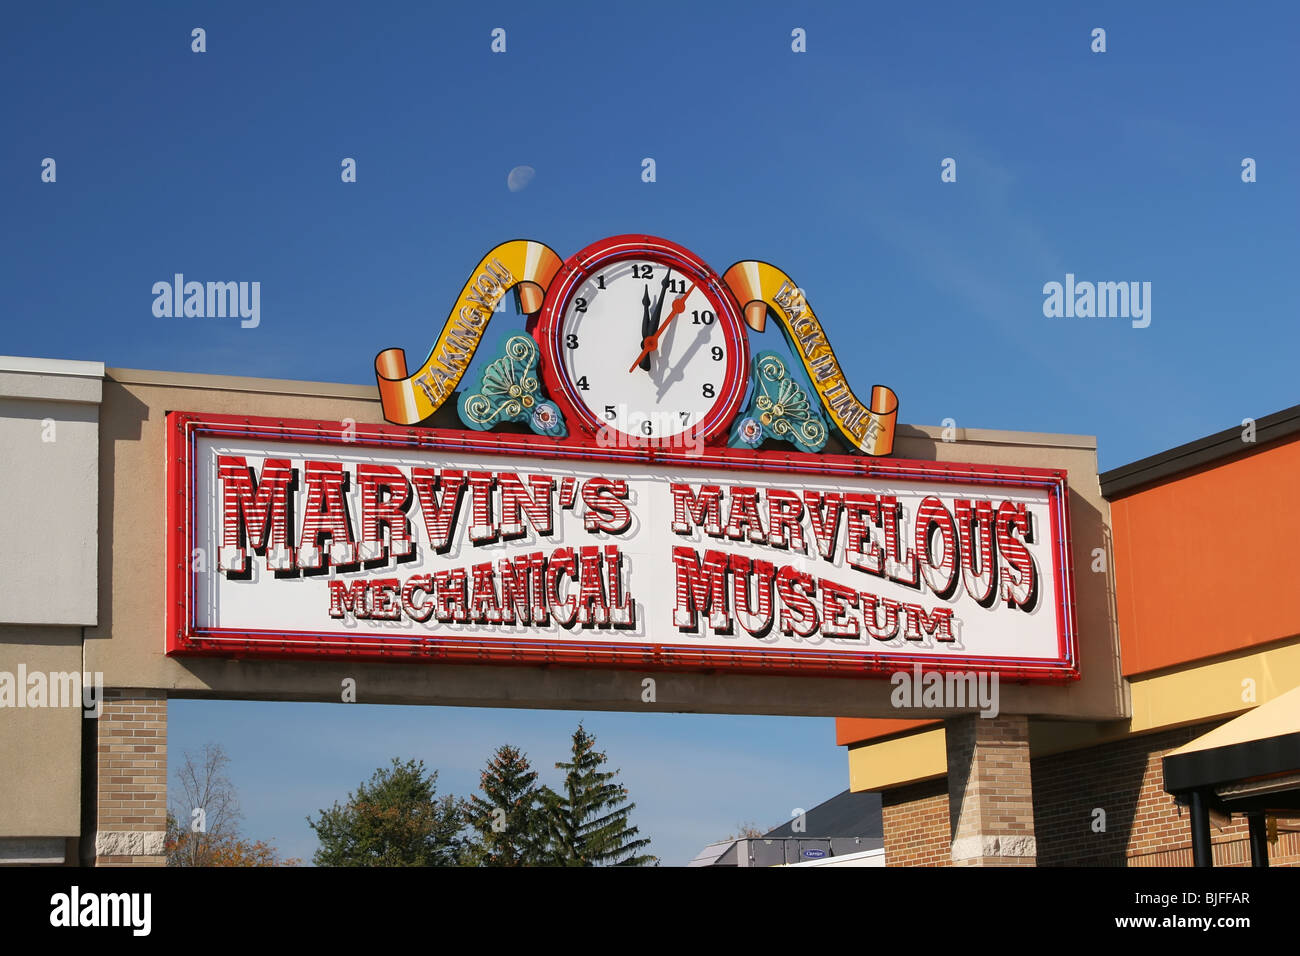 Zeichen für Marvin wunderbare mechanische Museum in Farmington Hills, Michigan, USA. Hinweis rückwärts laufende Uhr. Stockfoto